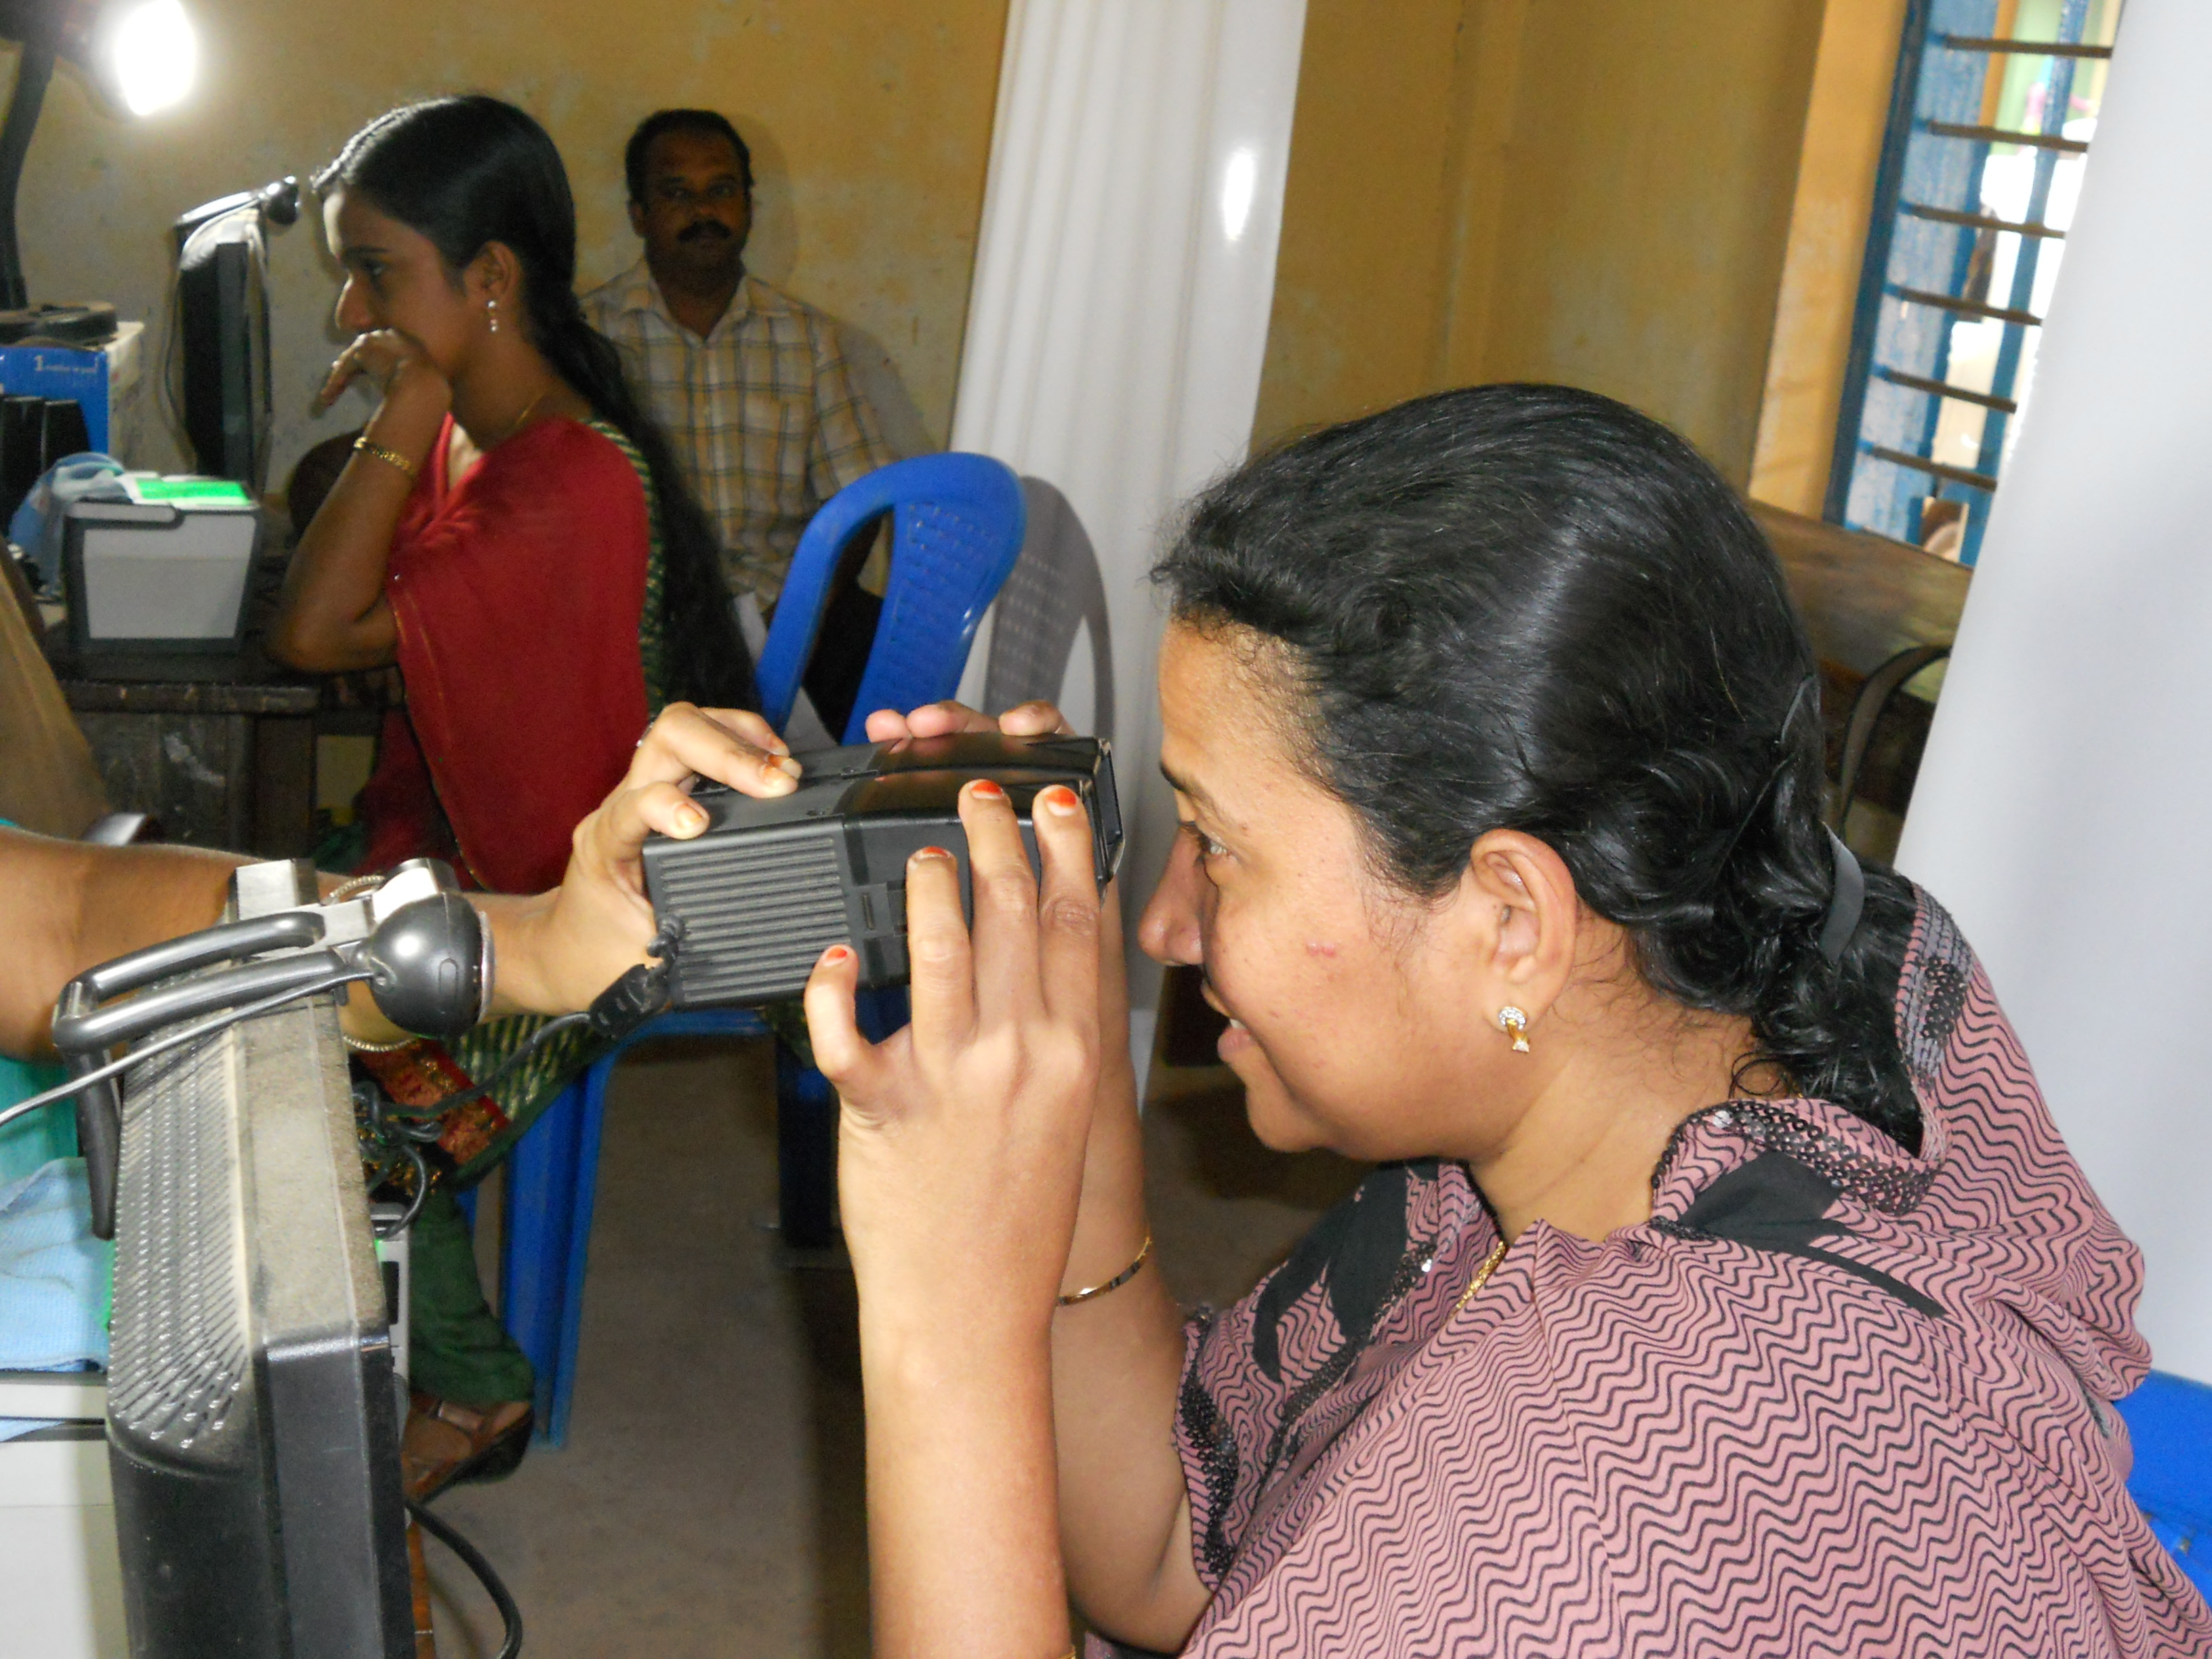 Recogida de imágenes del iris para Aadhaar. Fuente: Fotokannan/ Wikimedia Commons